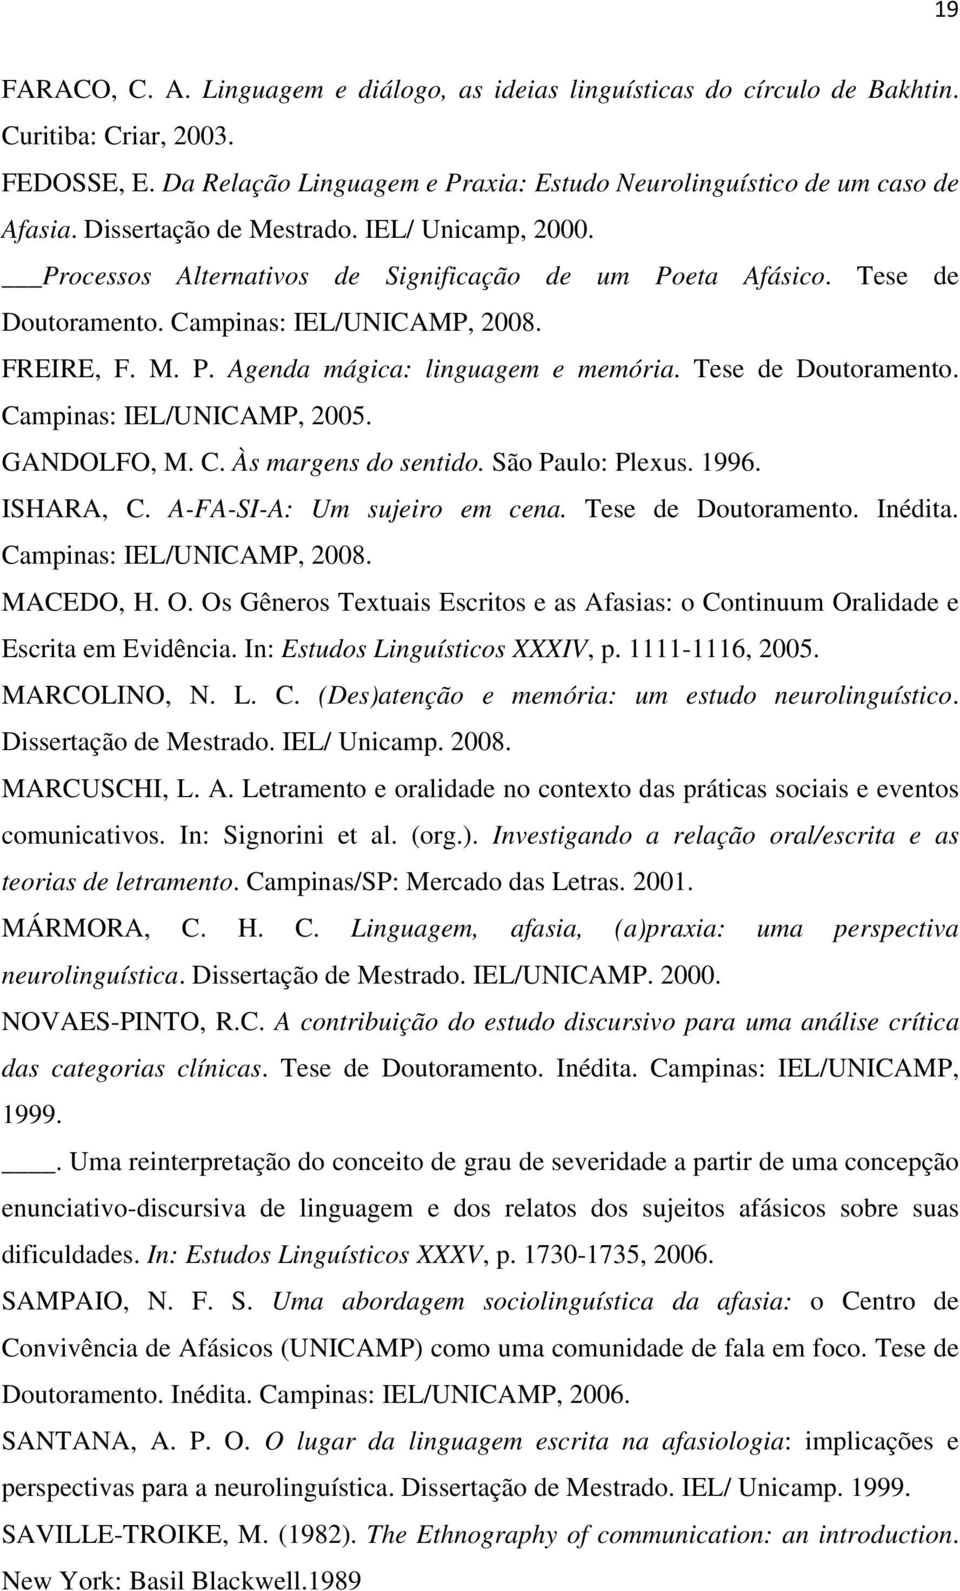 Tese de Doutoramento. Campinas: IEL/UNICAMP, 2005. GANDOLFO, M. C. Às margens do sentido. São Paulo: Plexus. 1996. ISHARA, C. A-FA-SI-A: Um sujeiro em cena. Tese de Doutoramento. Inédita.